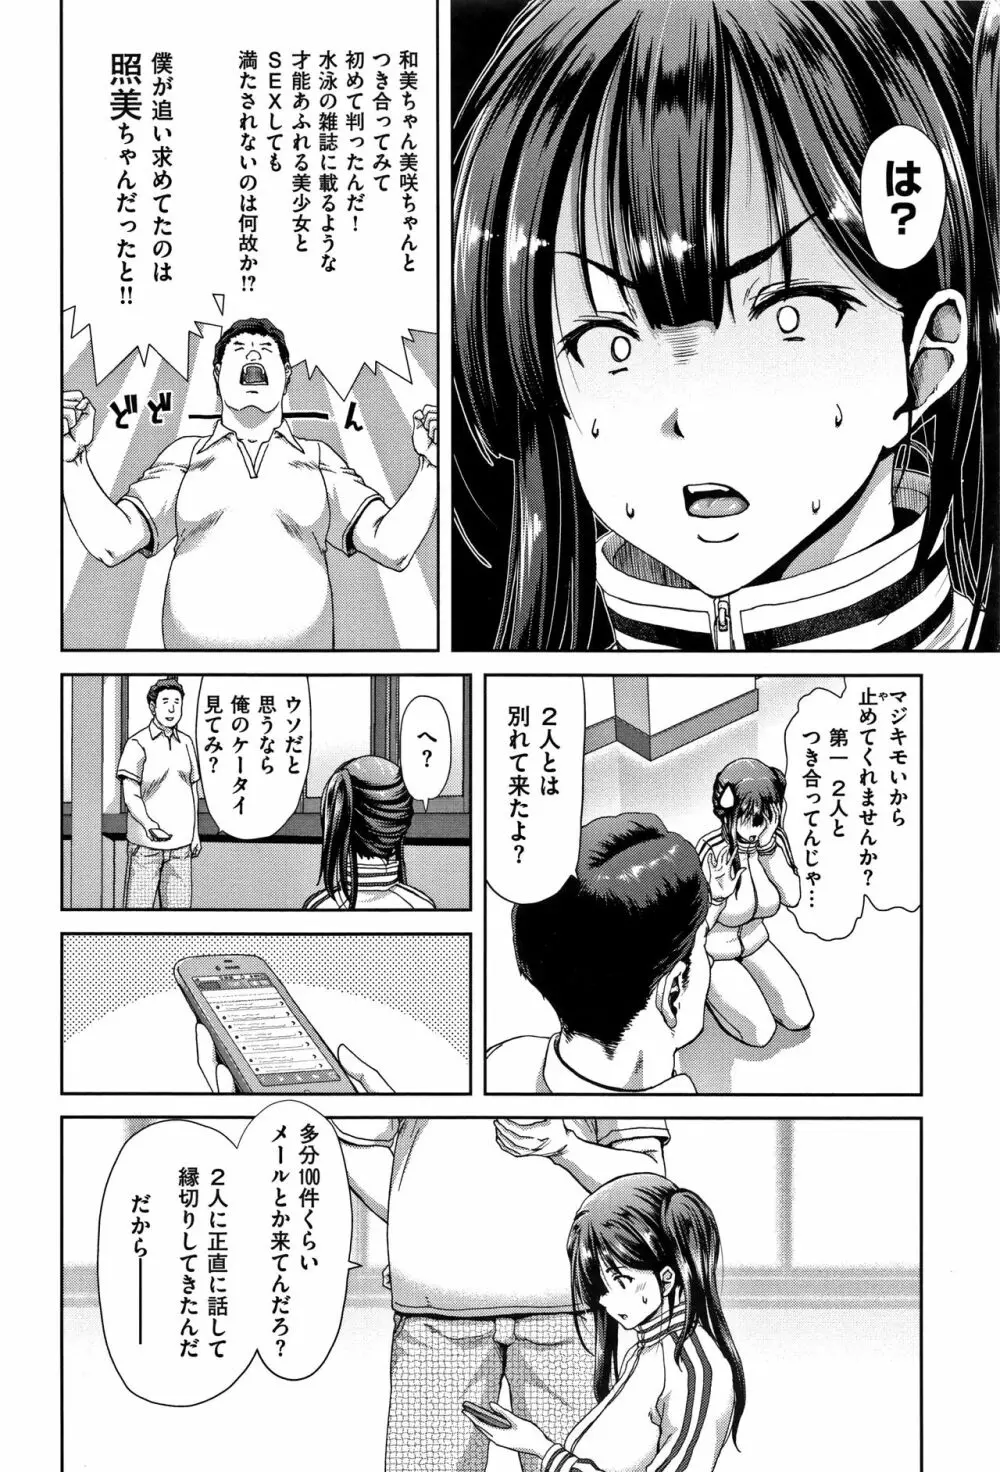 ハーレムパコパコ愛好会 + 4Pリーフレット 59ページ